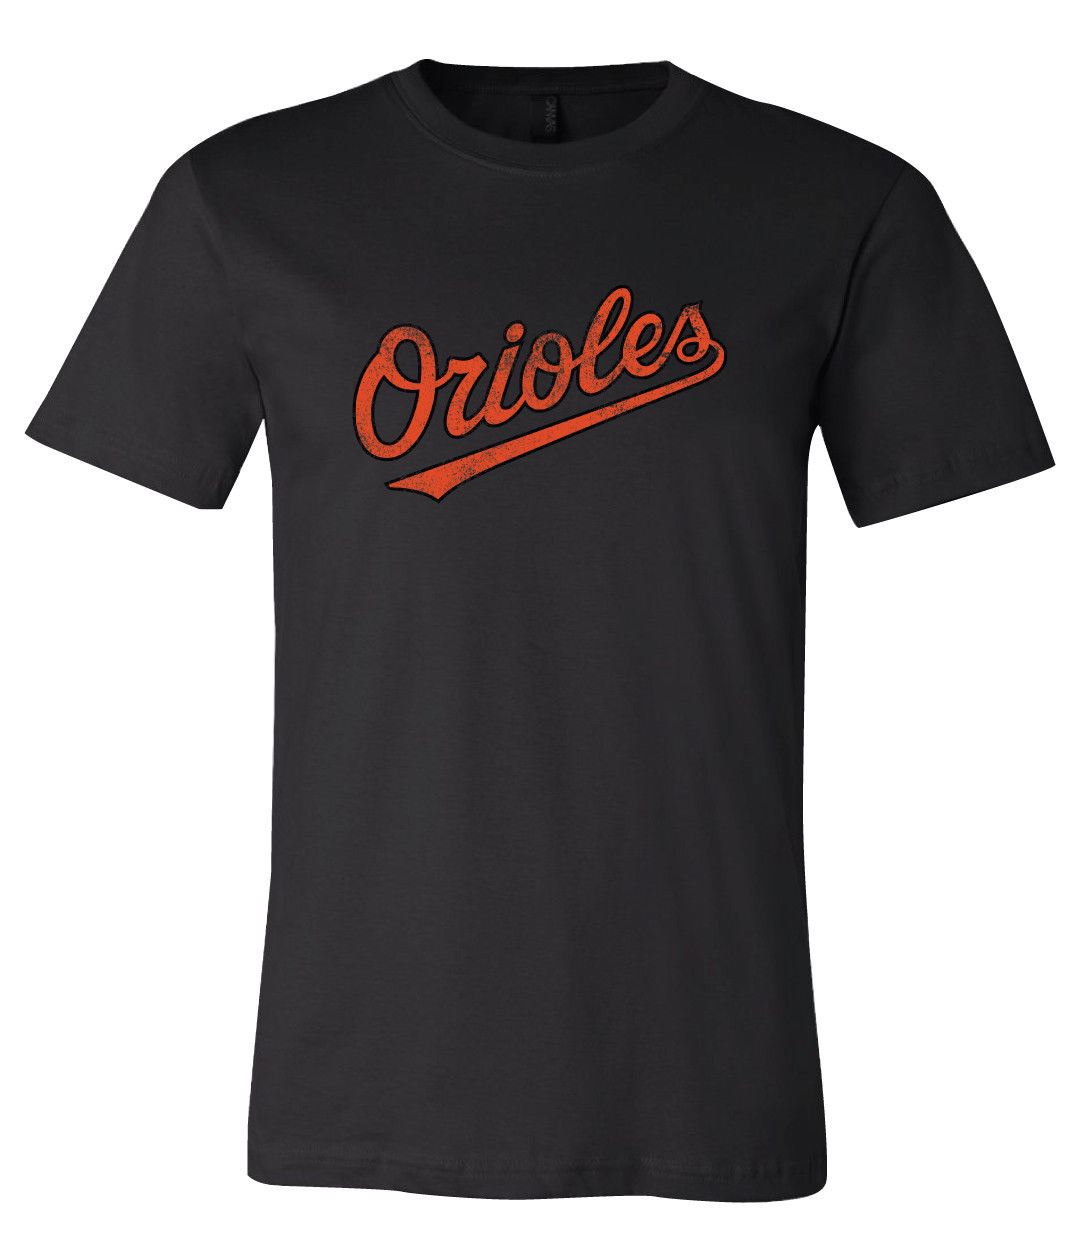 Baltimore Ravens Baltimore Orioles MASH UP Logo T-shirt 6 Sizes S-3XL!